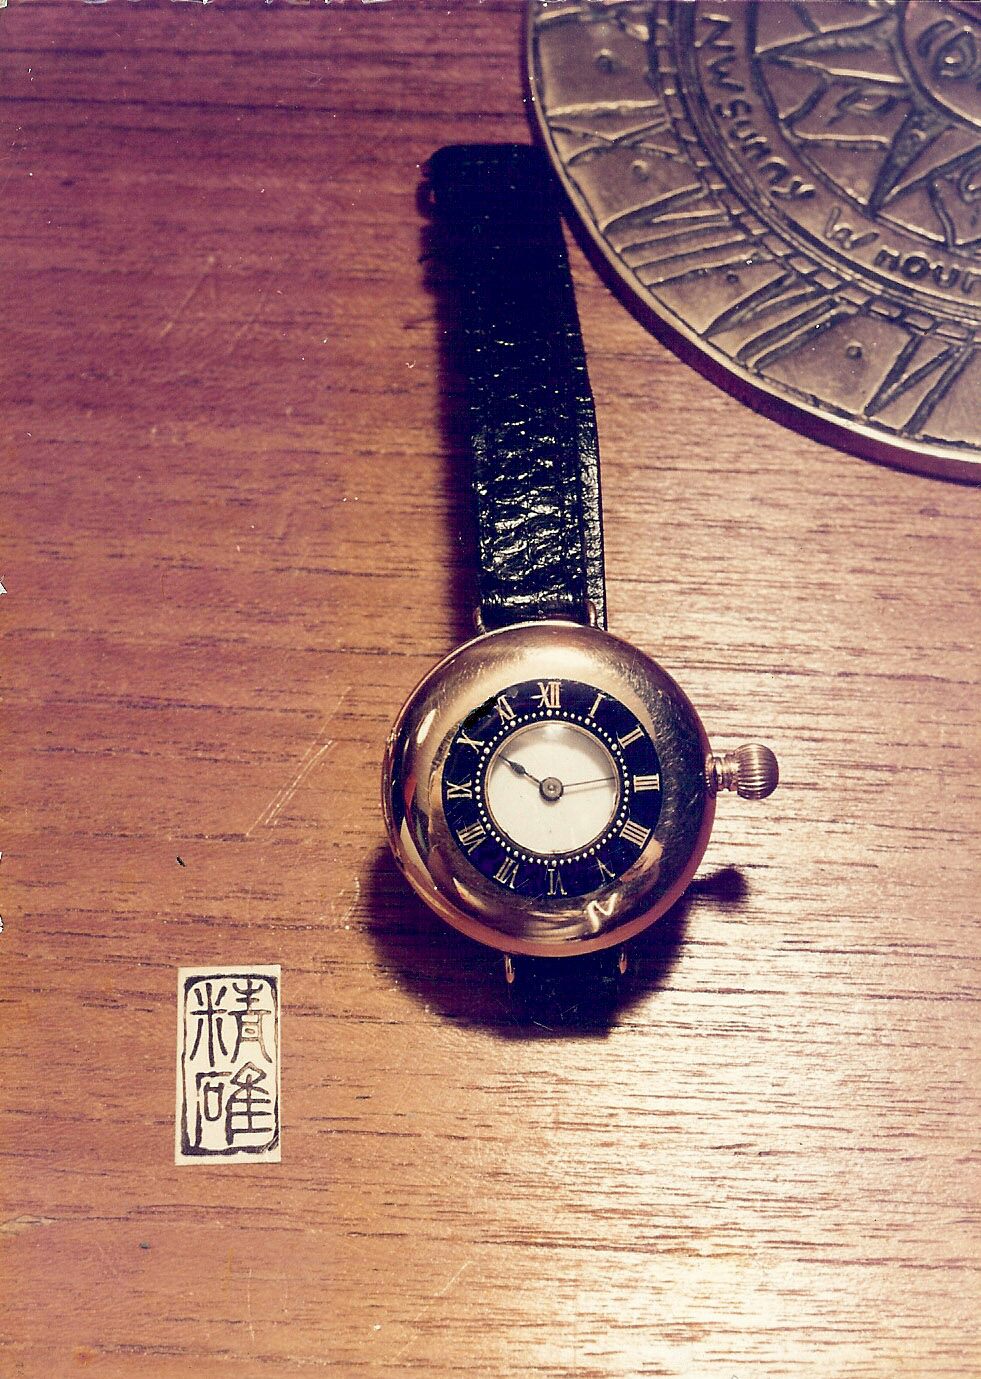 原來這枚古董表是難得一見的Pocket Watch，亦即是一枚黃金表殼Omega Ca1900 Half-hunter，由一家開業至今已四十多年的古董鐘表買賣及維修專門店Ching Kuok Watch Service （精確鐘表服務）的表行借出。(圖片源自精確鐘表服務Ching Kuok Watch Service Facebook) 